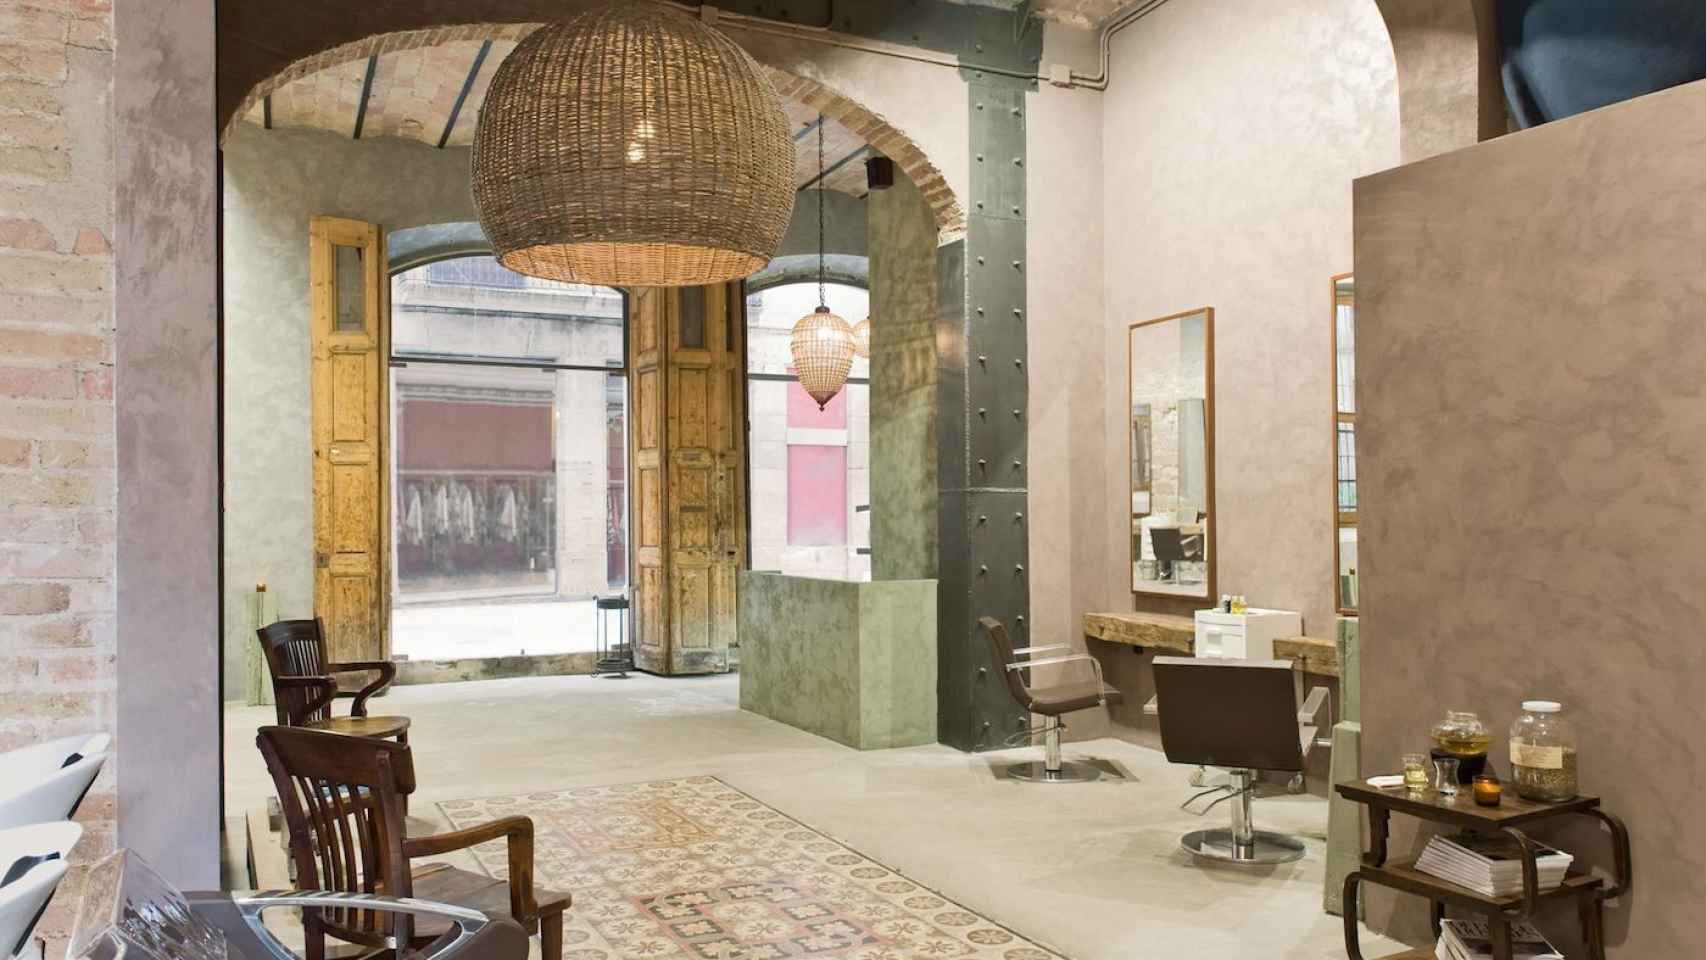 Le salon, una de las peluquerías más originales de Barcelona